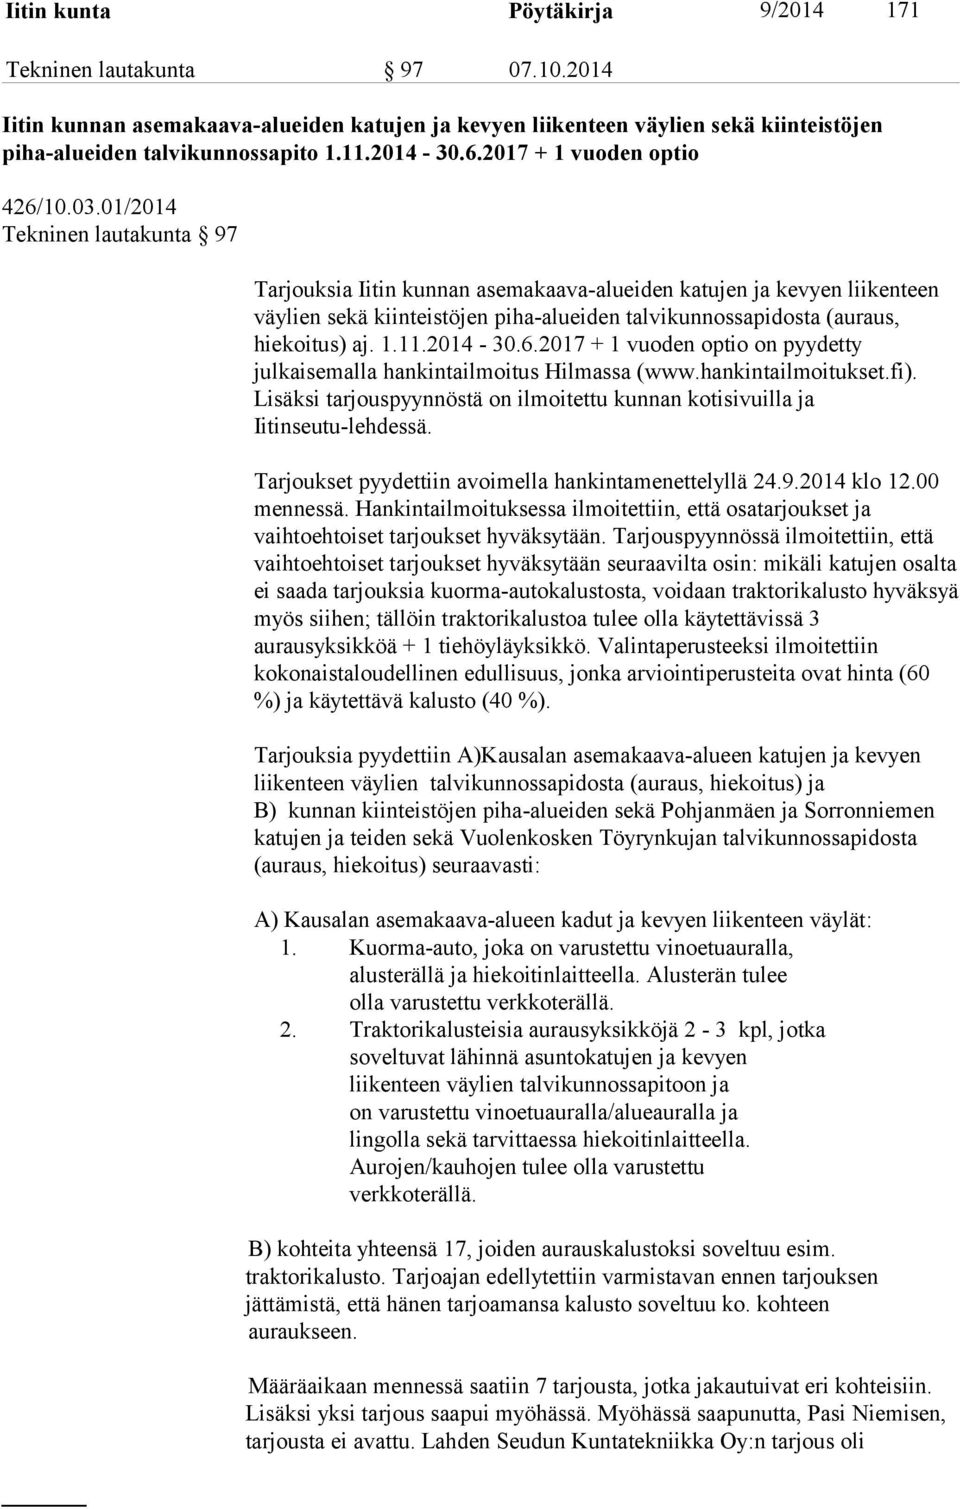 01/2014 Tekninen lautakunta 97 Tarjouksia Iitin kunnan asemakaava-alueiden katujen ja kevyen liikenteen väylien sekä kiinteistöjen piha-alueiden talvikunnossapidosta (auraus, hiekoitus) aj. 1.11.